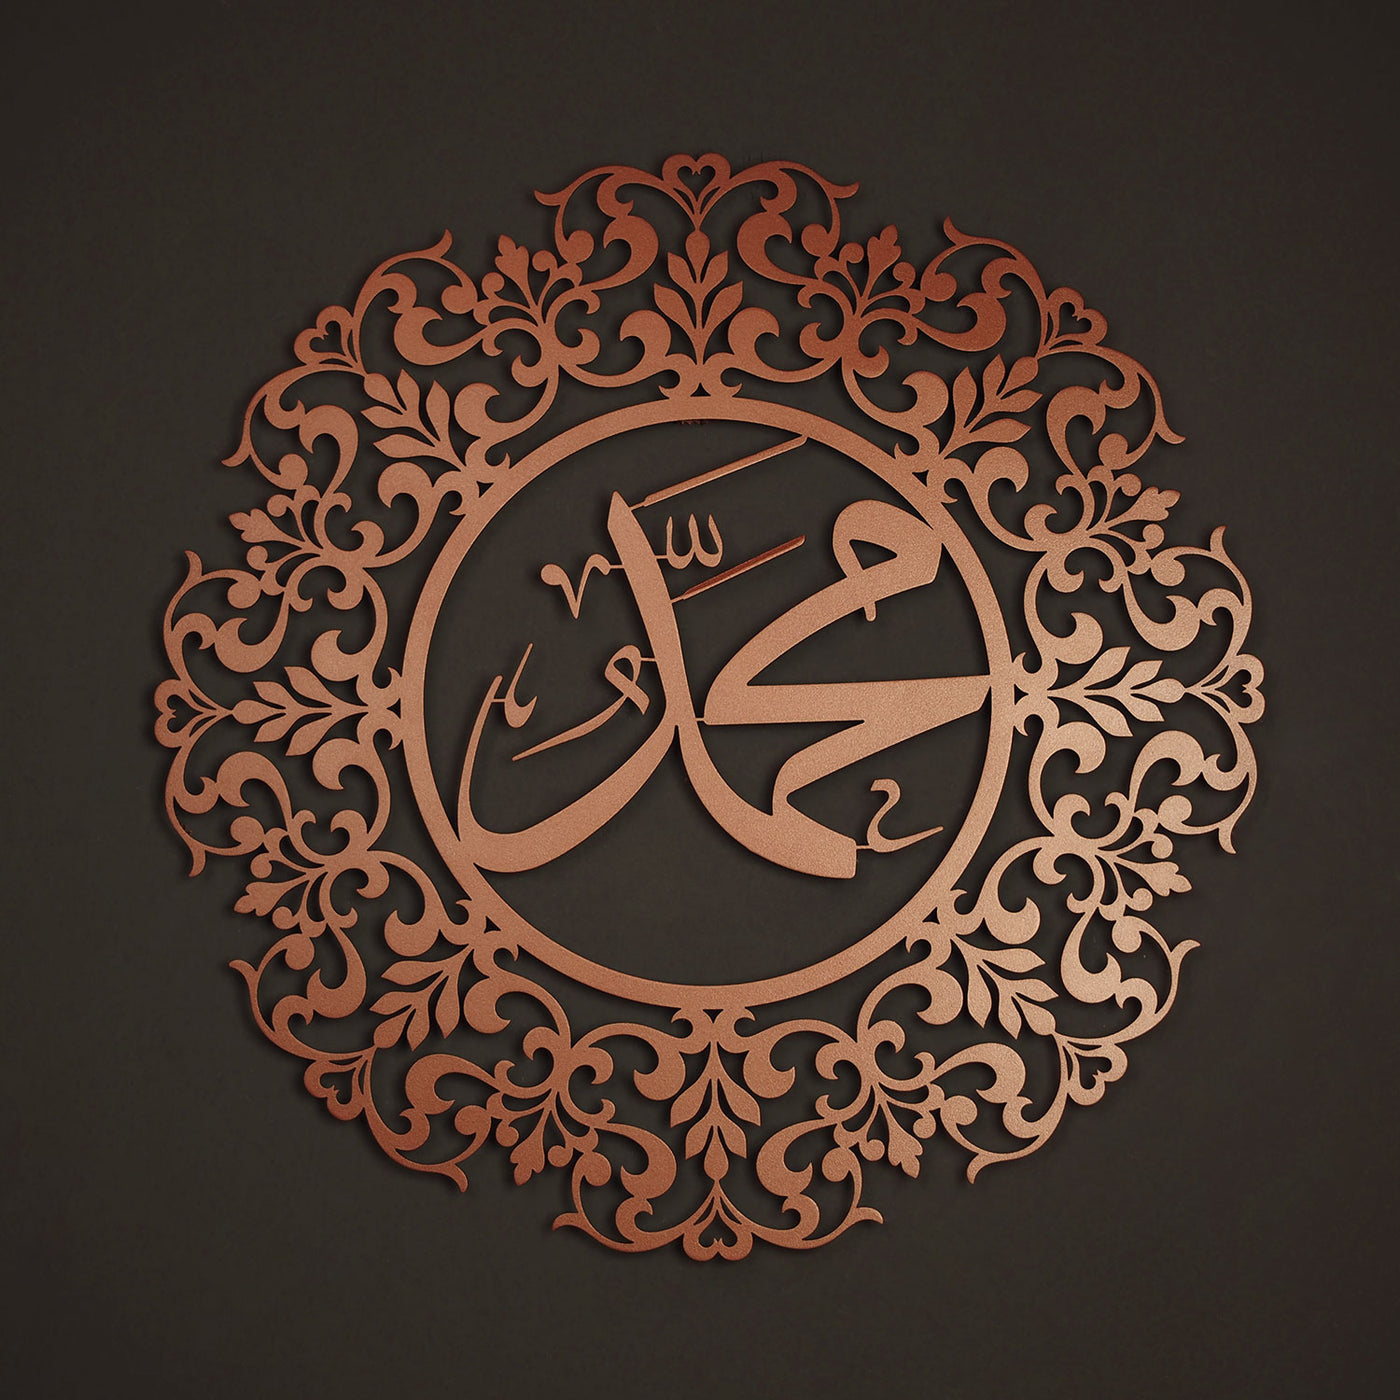 لوحة جدارية معدنية بزخرفة إسلامي مكتوب داخلها( محمد صلى الله عليه وسلم ) - WAM138